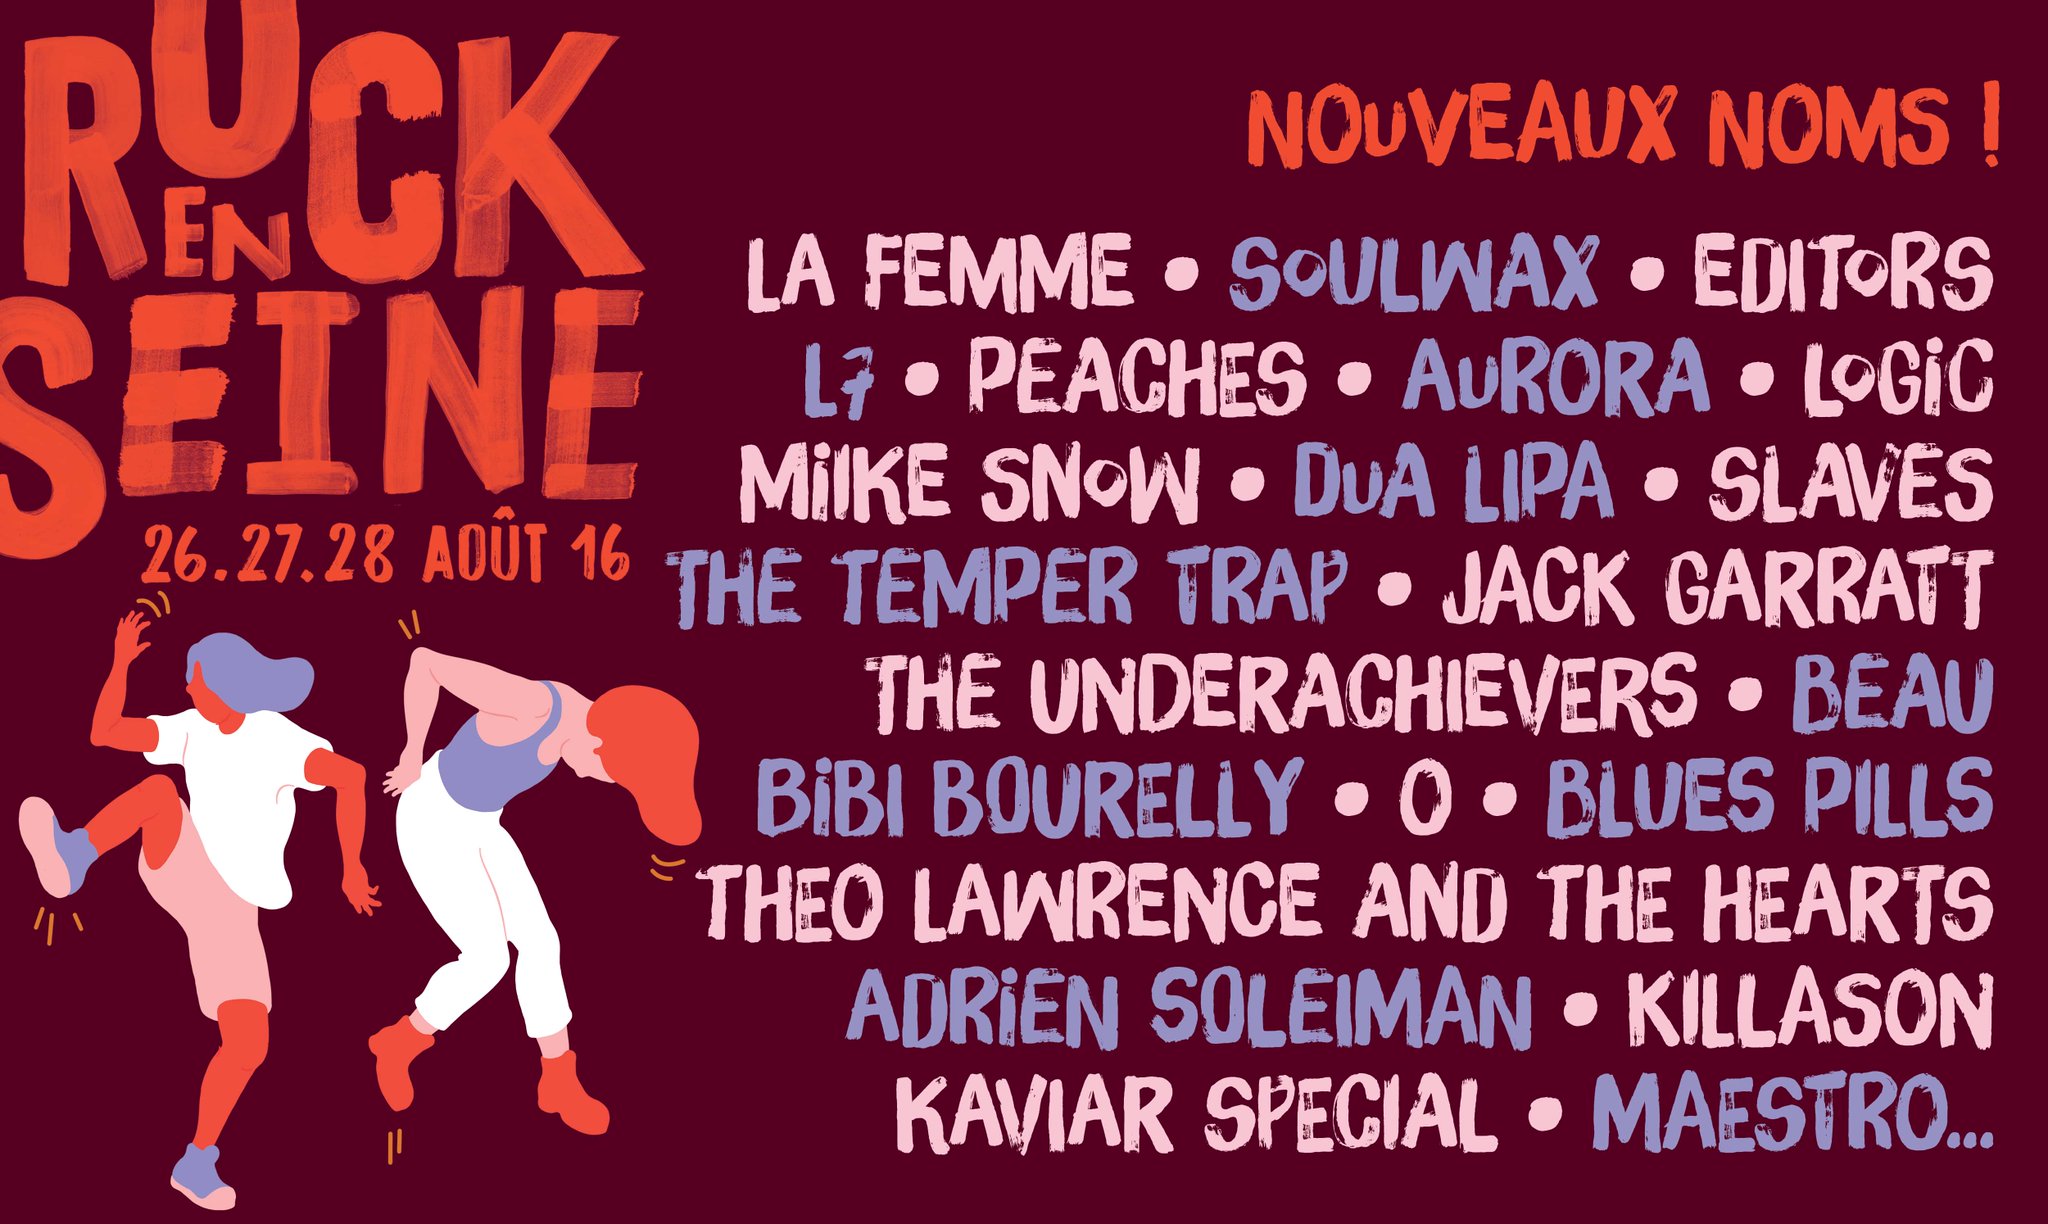 ROCK EN SEINE 2017 (25-27 de Agosto, París)  Chh6PcRWMAA2Ed0